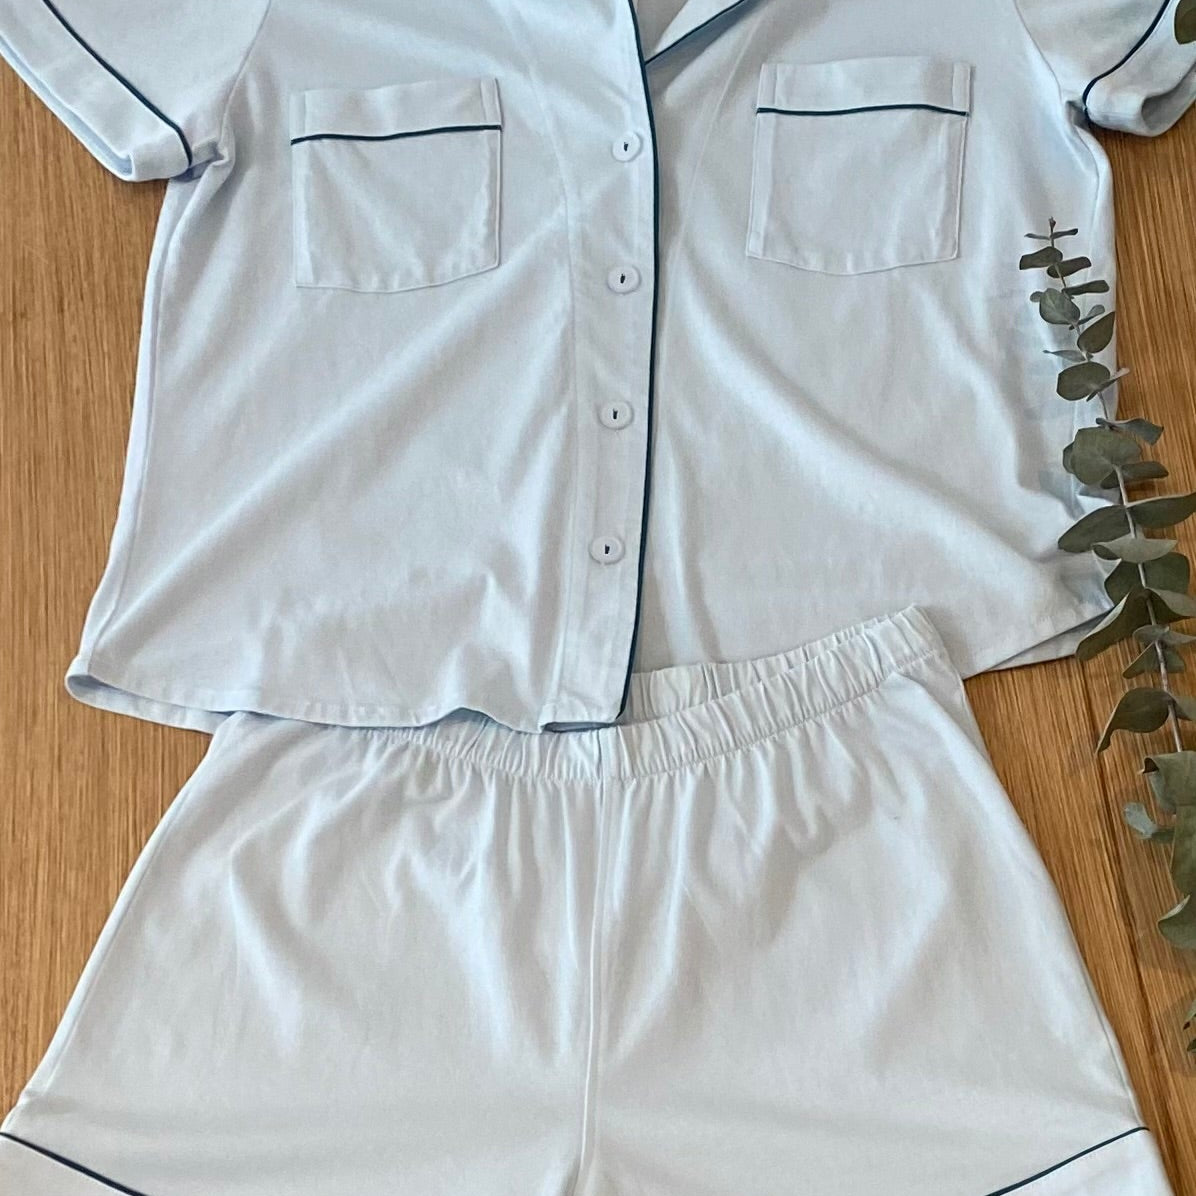 Classic Shorties Pajama Set in Pima Cotton - EVAMAIA